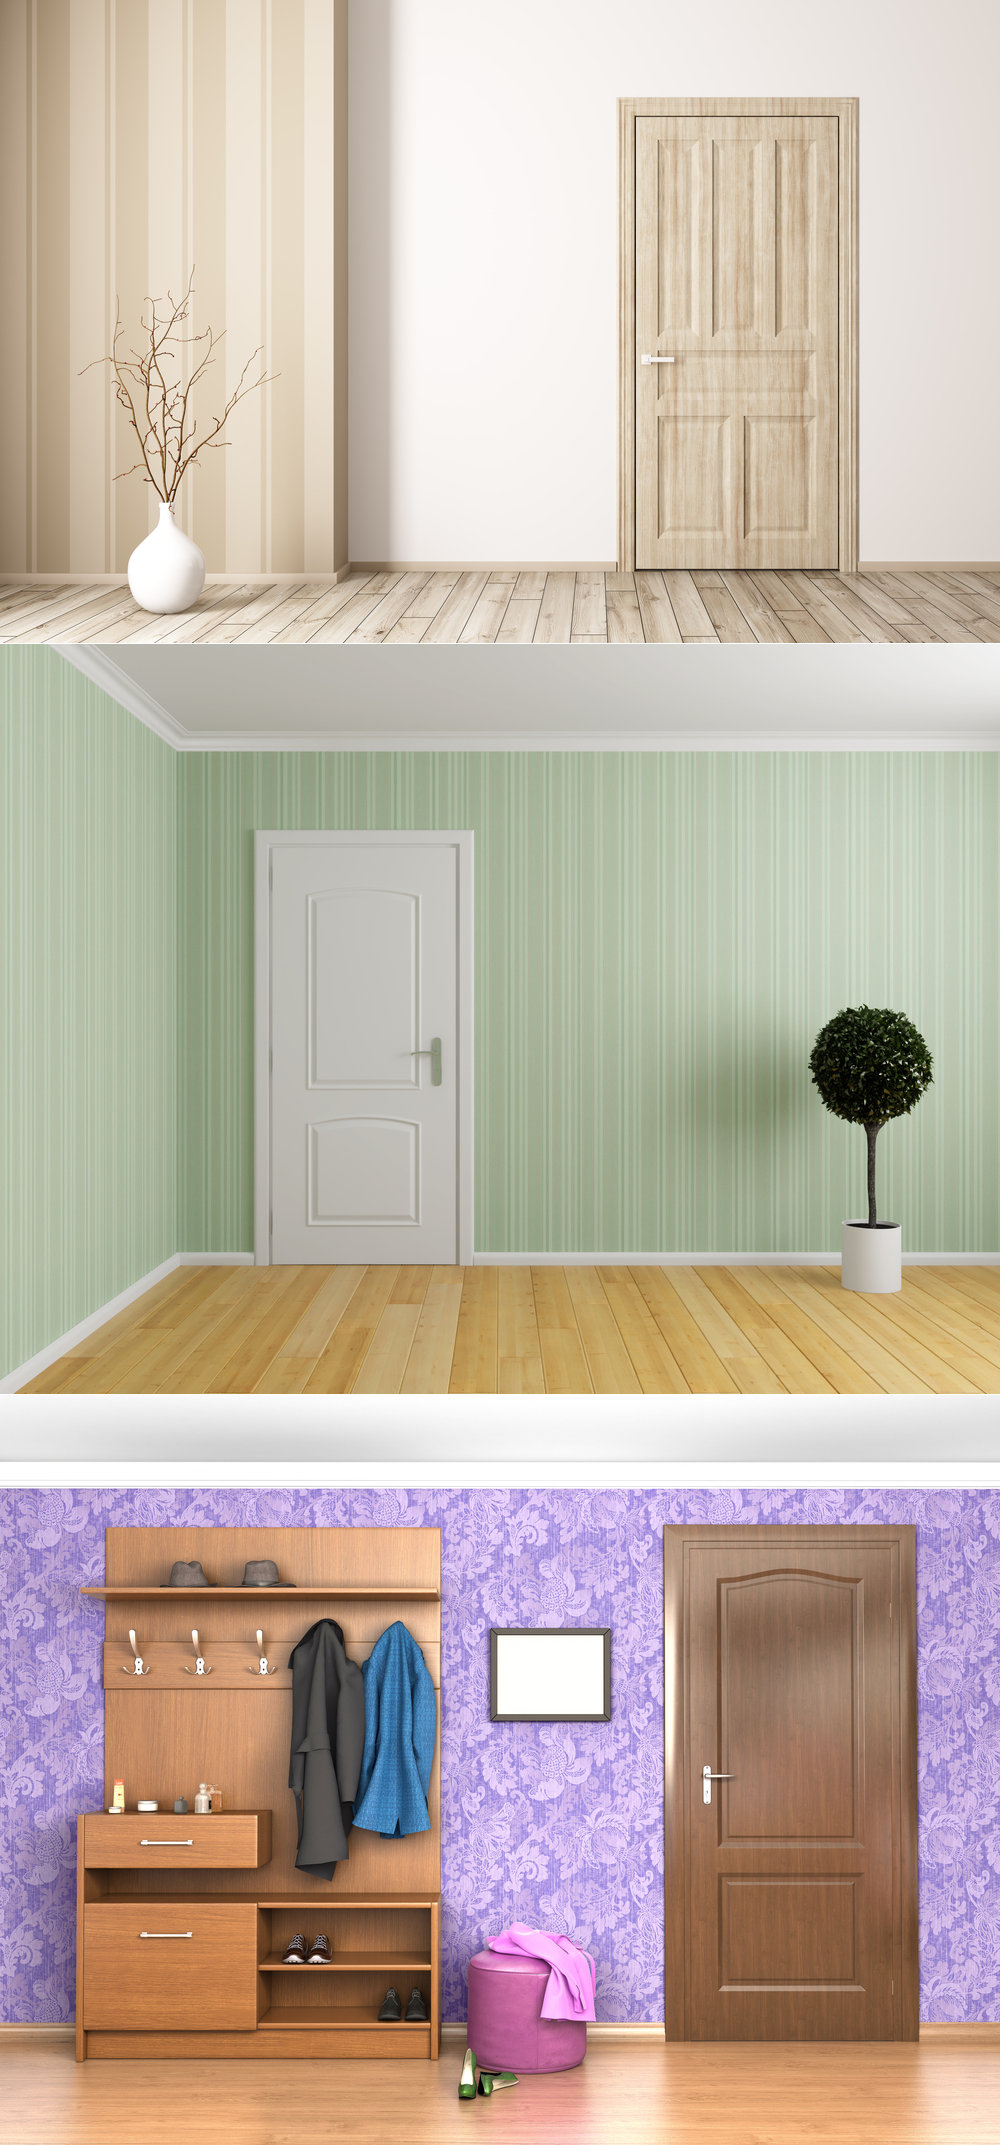 Цвет мебели и пола стен подобрать